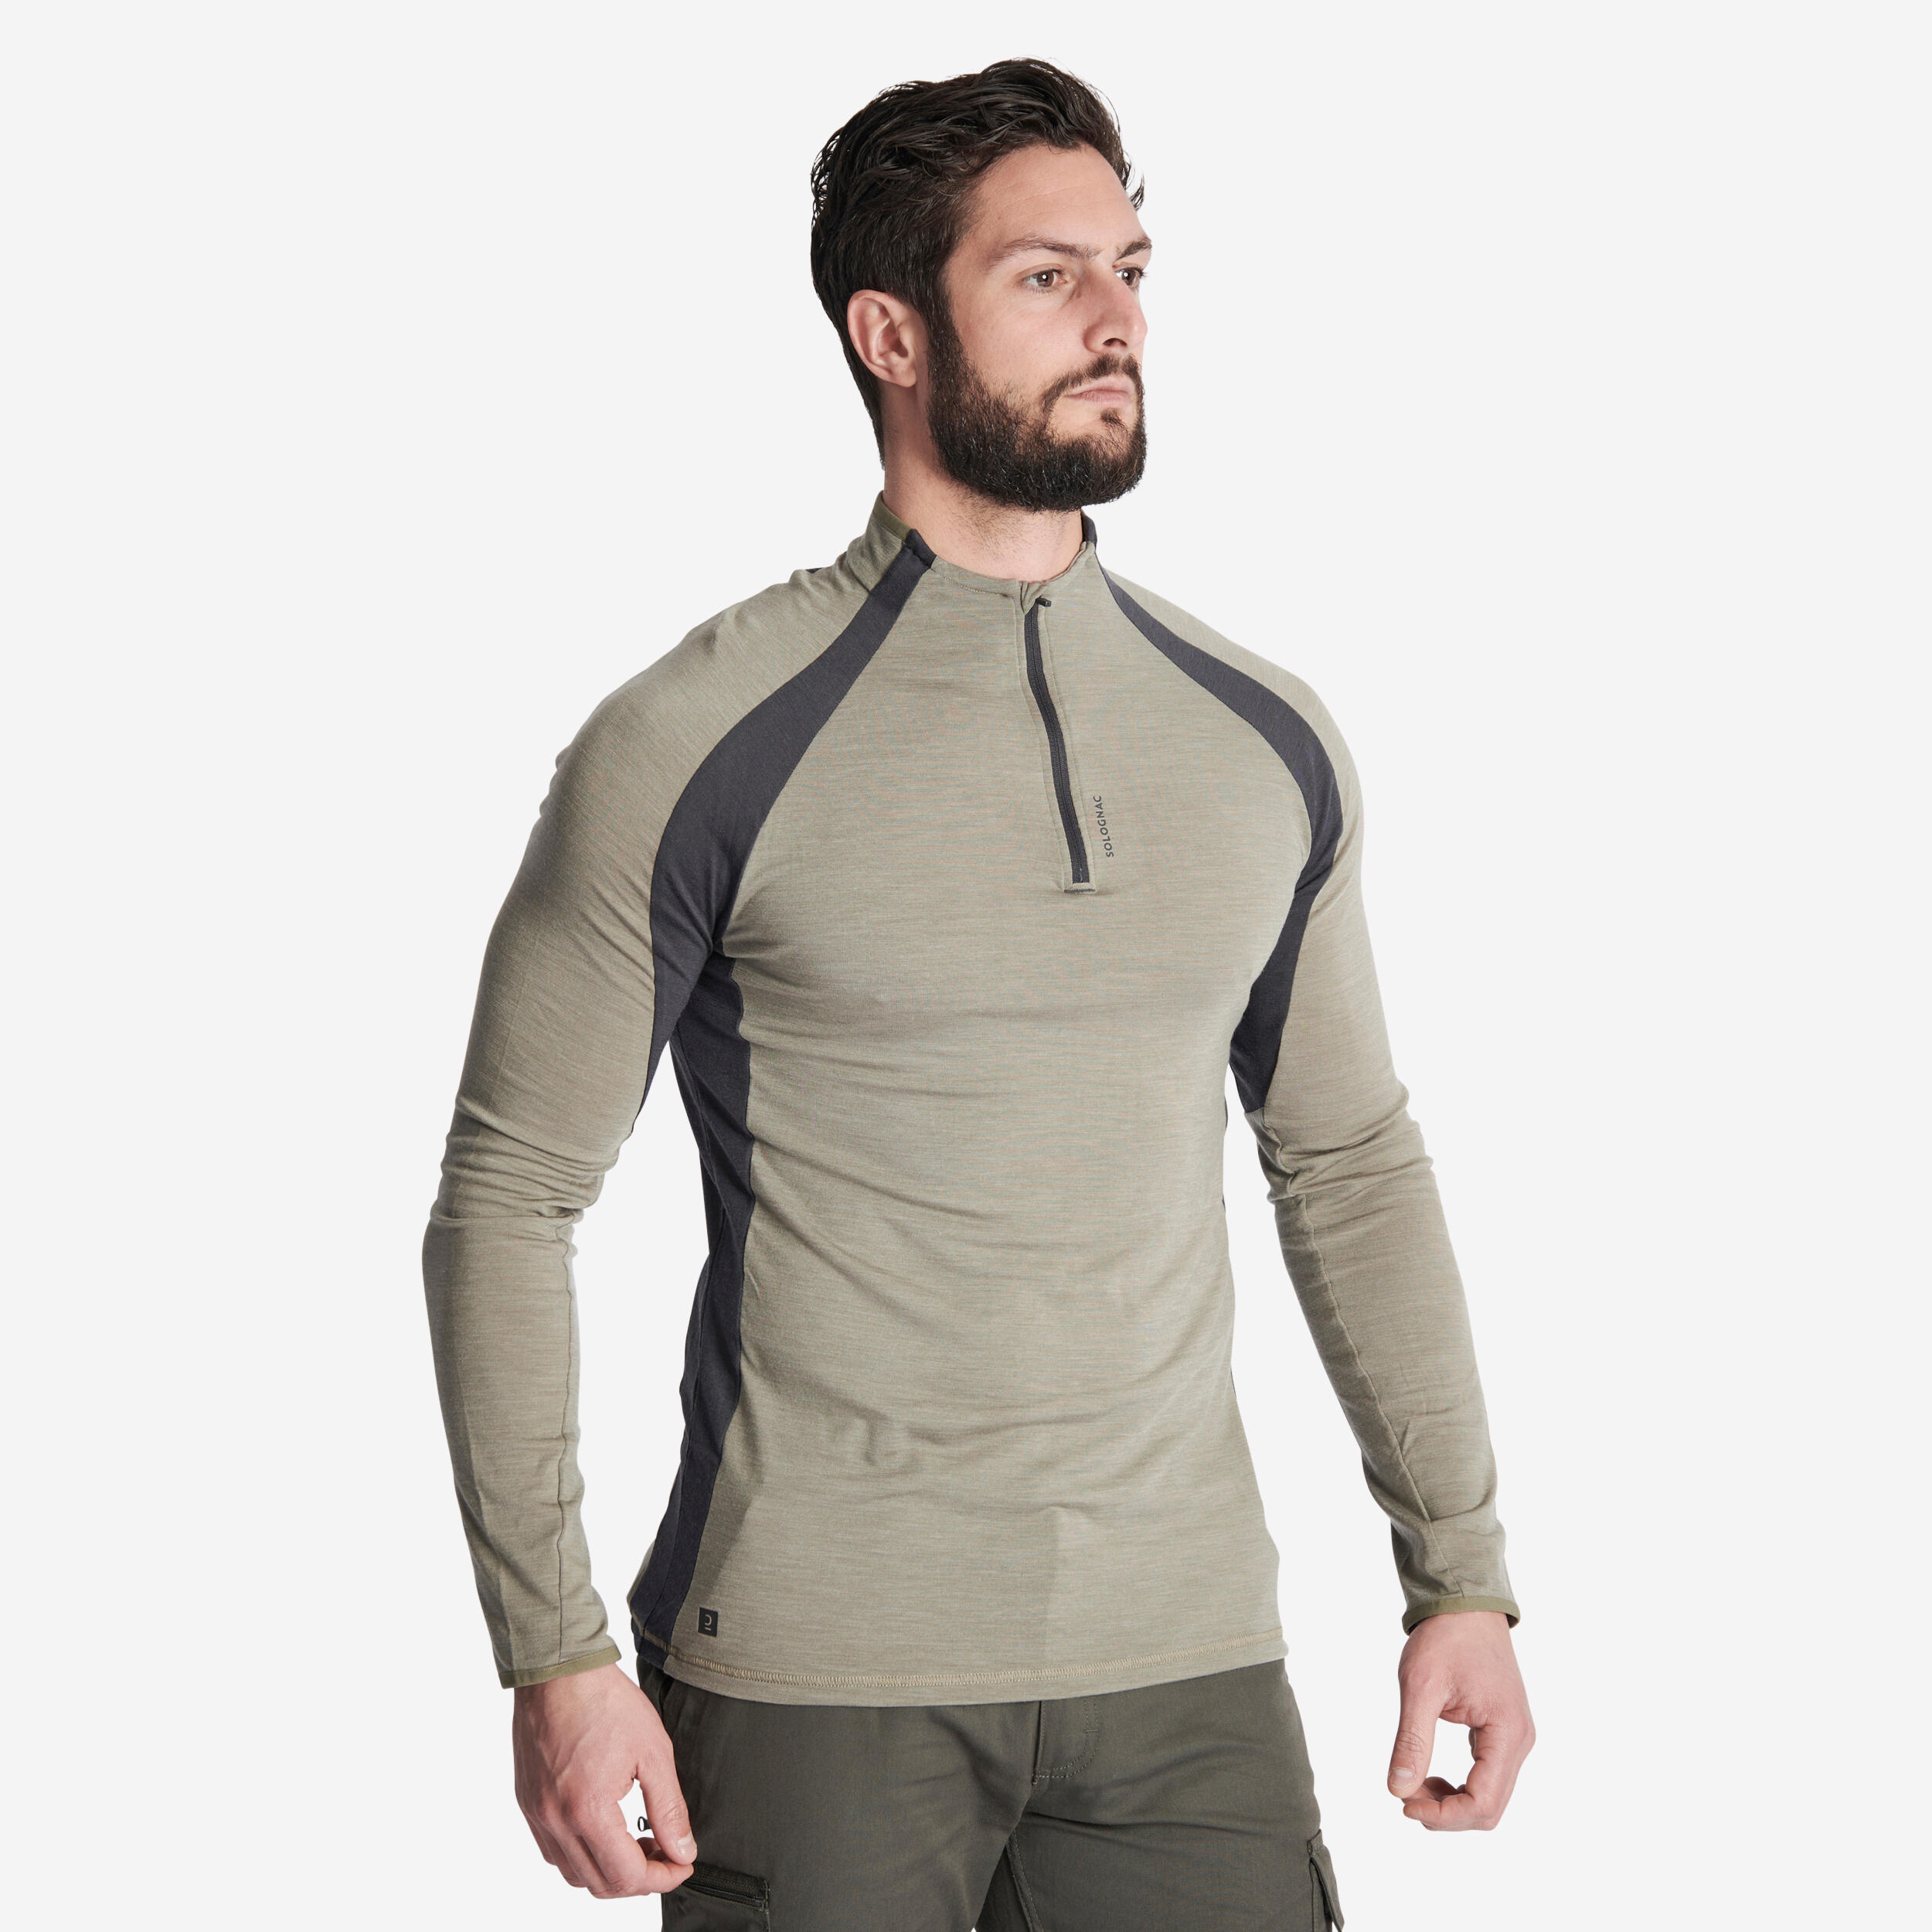 Men's Long-sleeved Breathable Merino Wool Zipped T-shirt - 900 light green 1/6